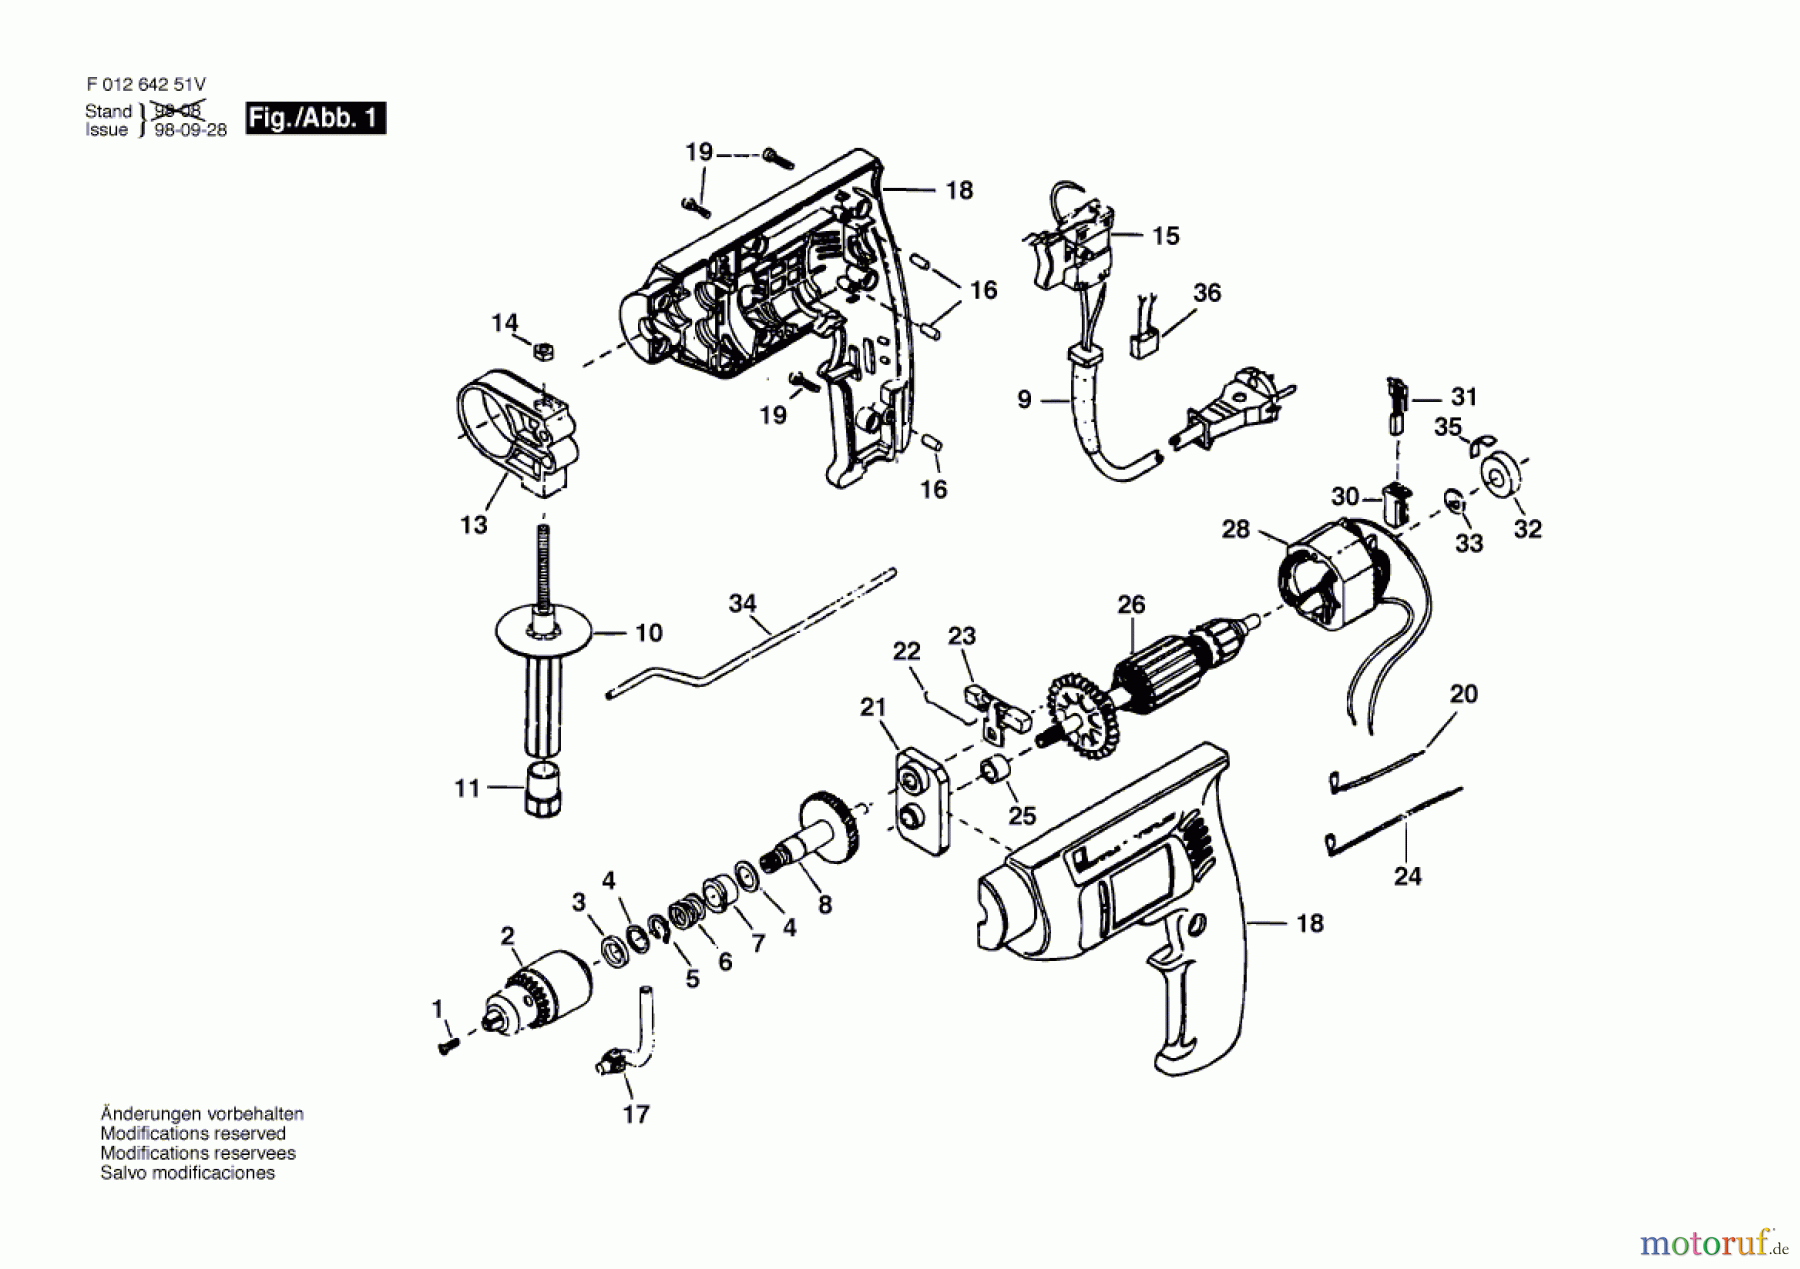  Bosch Werkzeug Bohrmaschine 6425-41 Seite 1